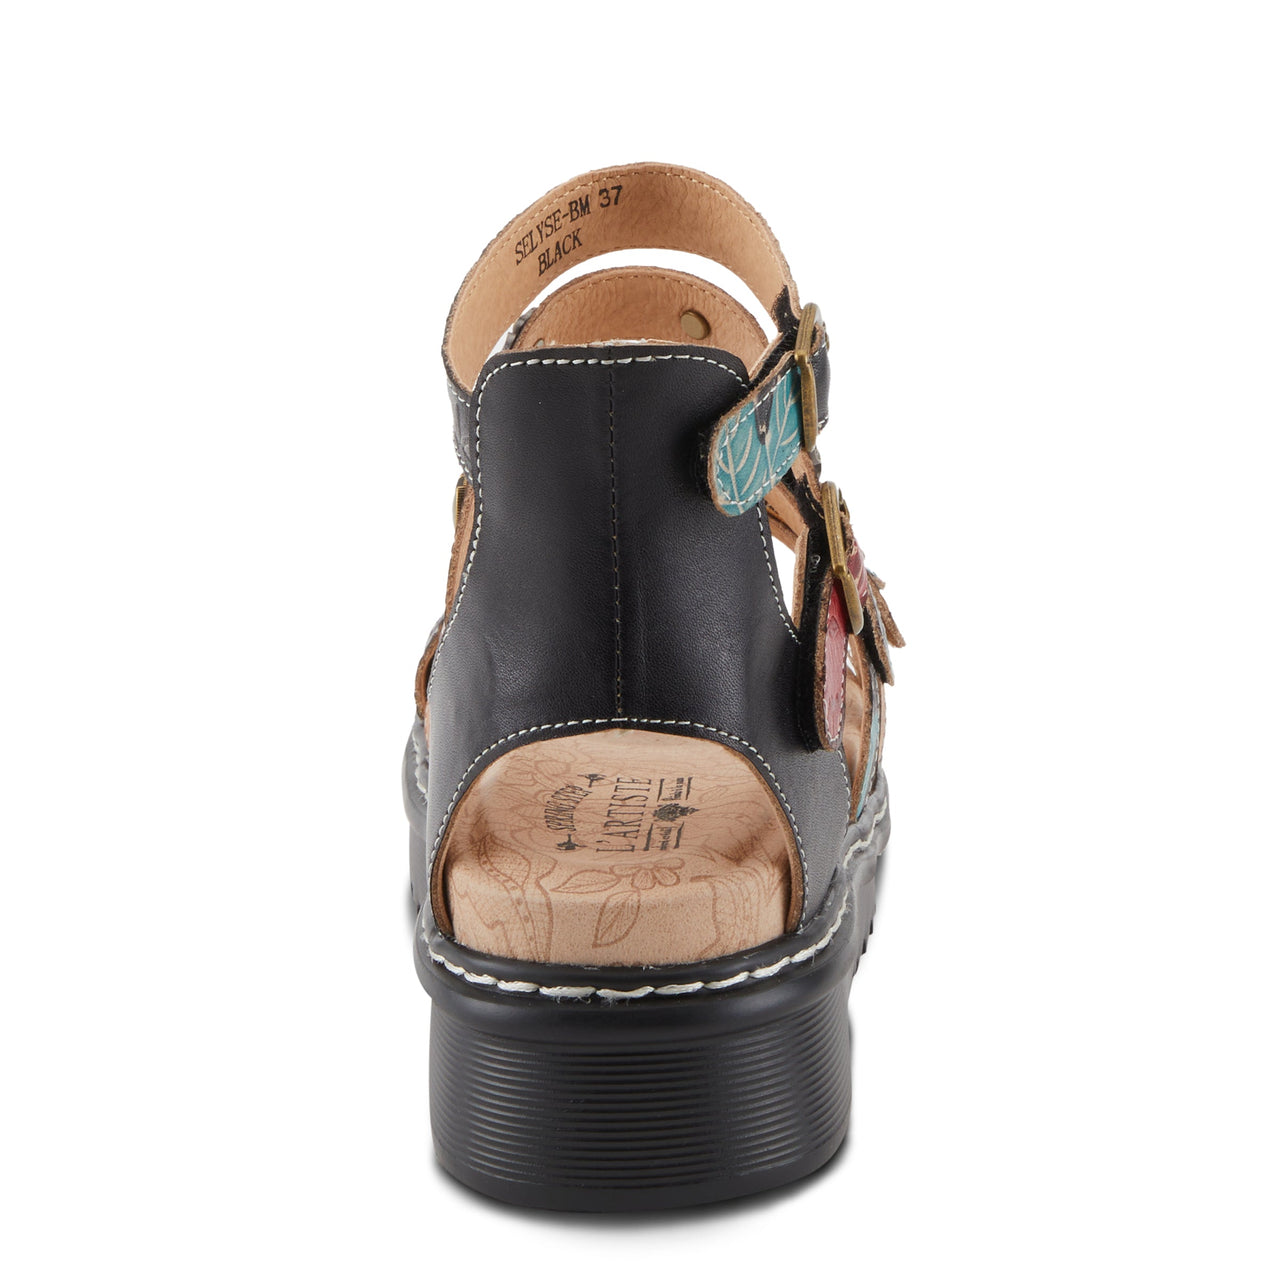 Spring Step Shoes L'Artiste Selyse Sandals